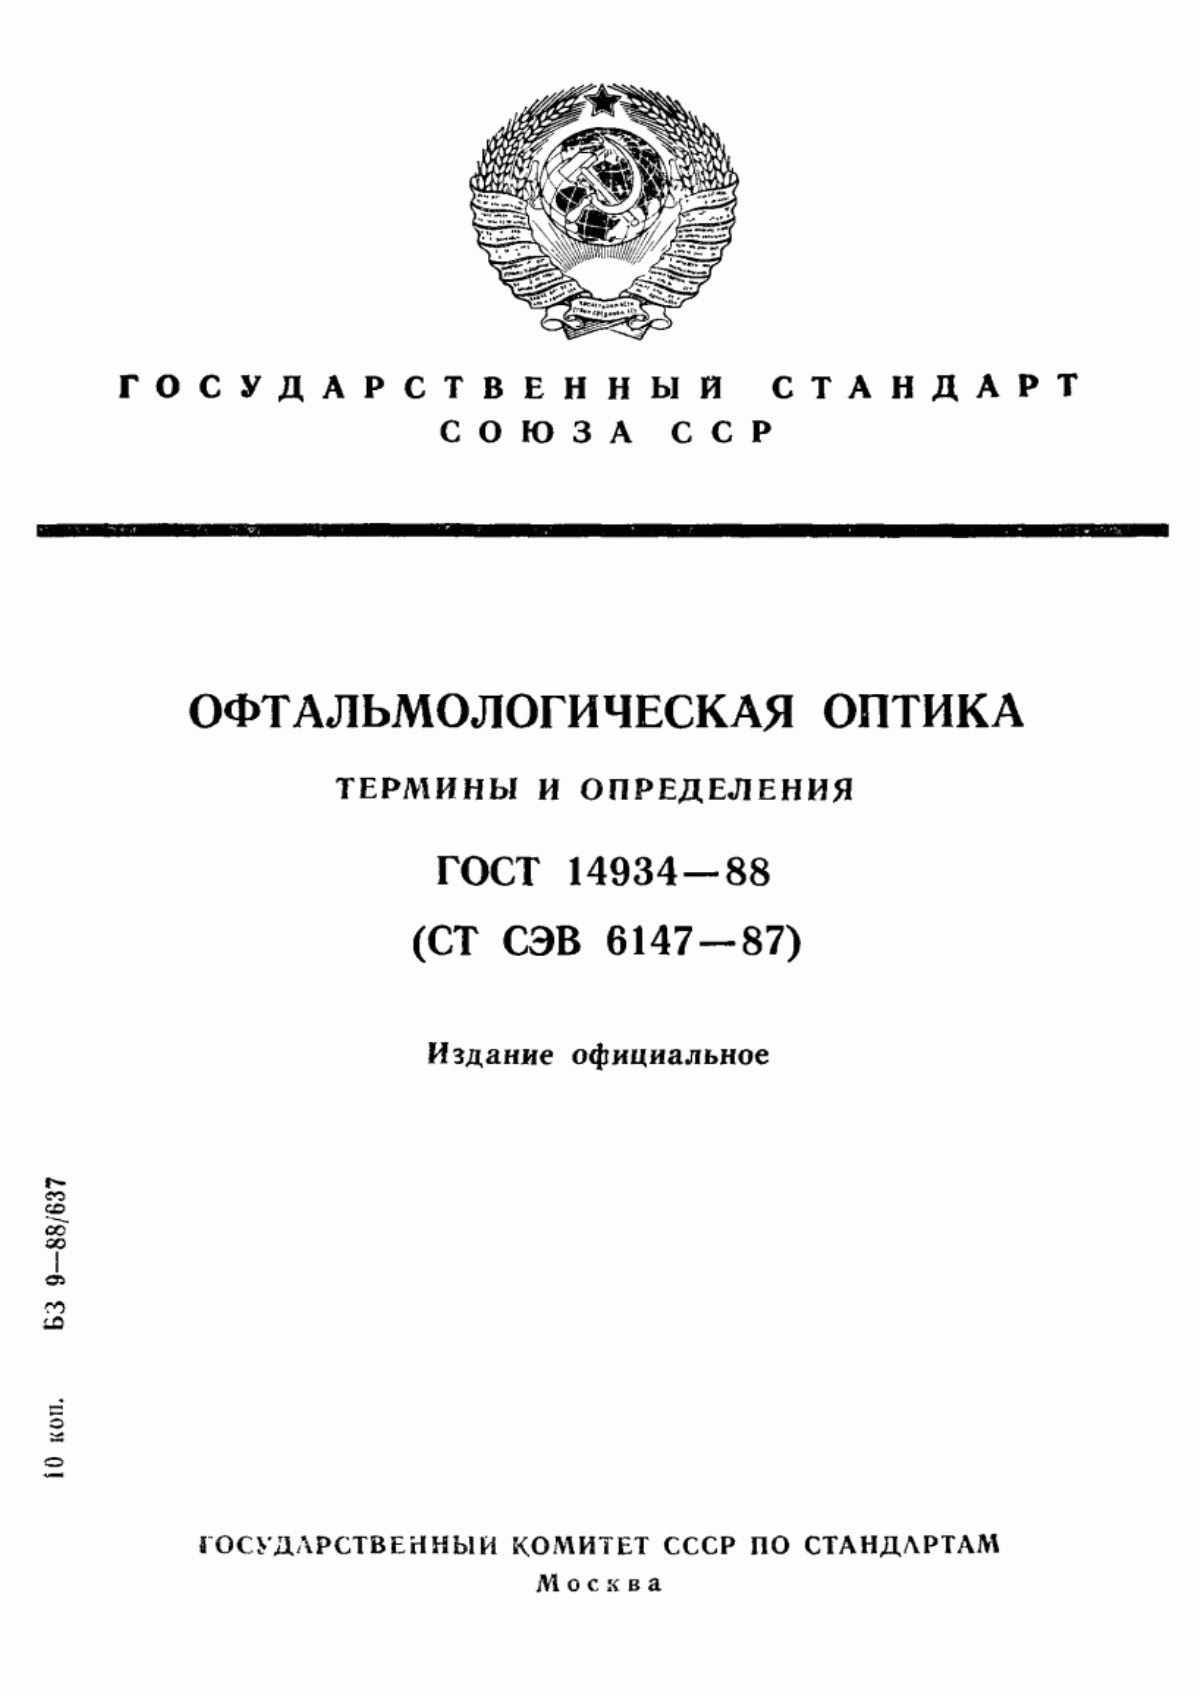 ГОСТ 14934-88 Офтальмологическая оптика. Термины и определения